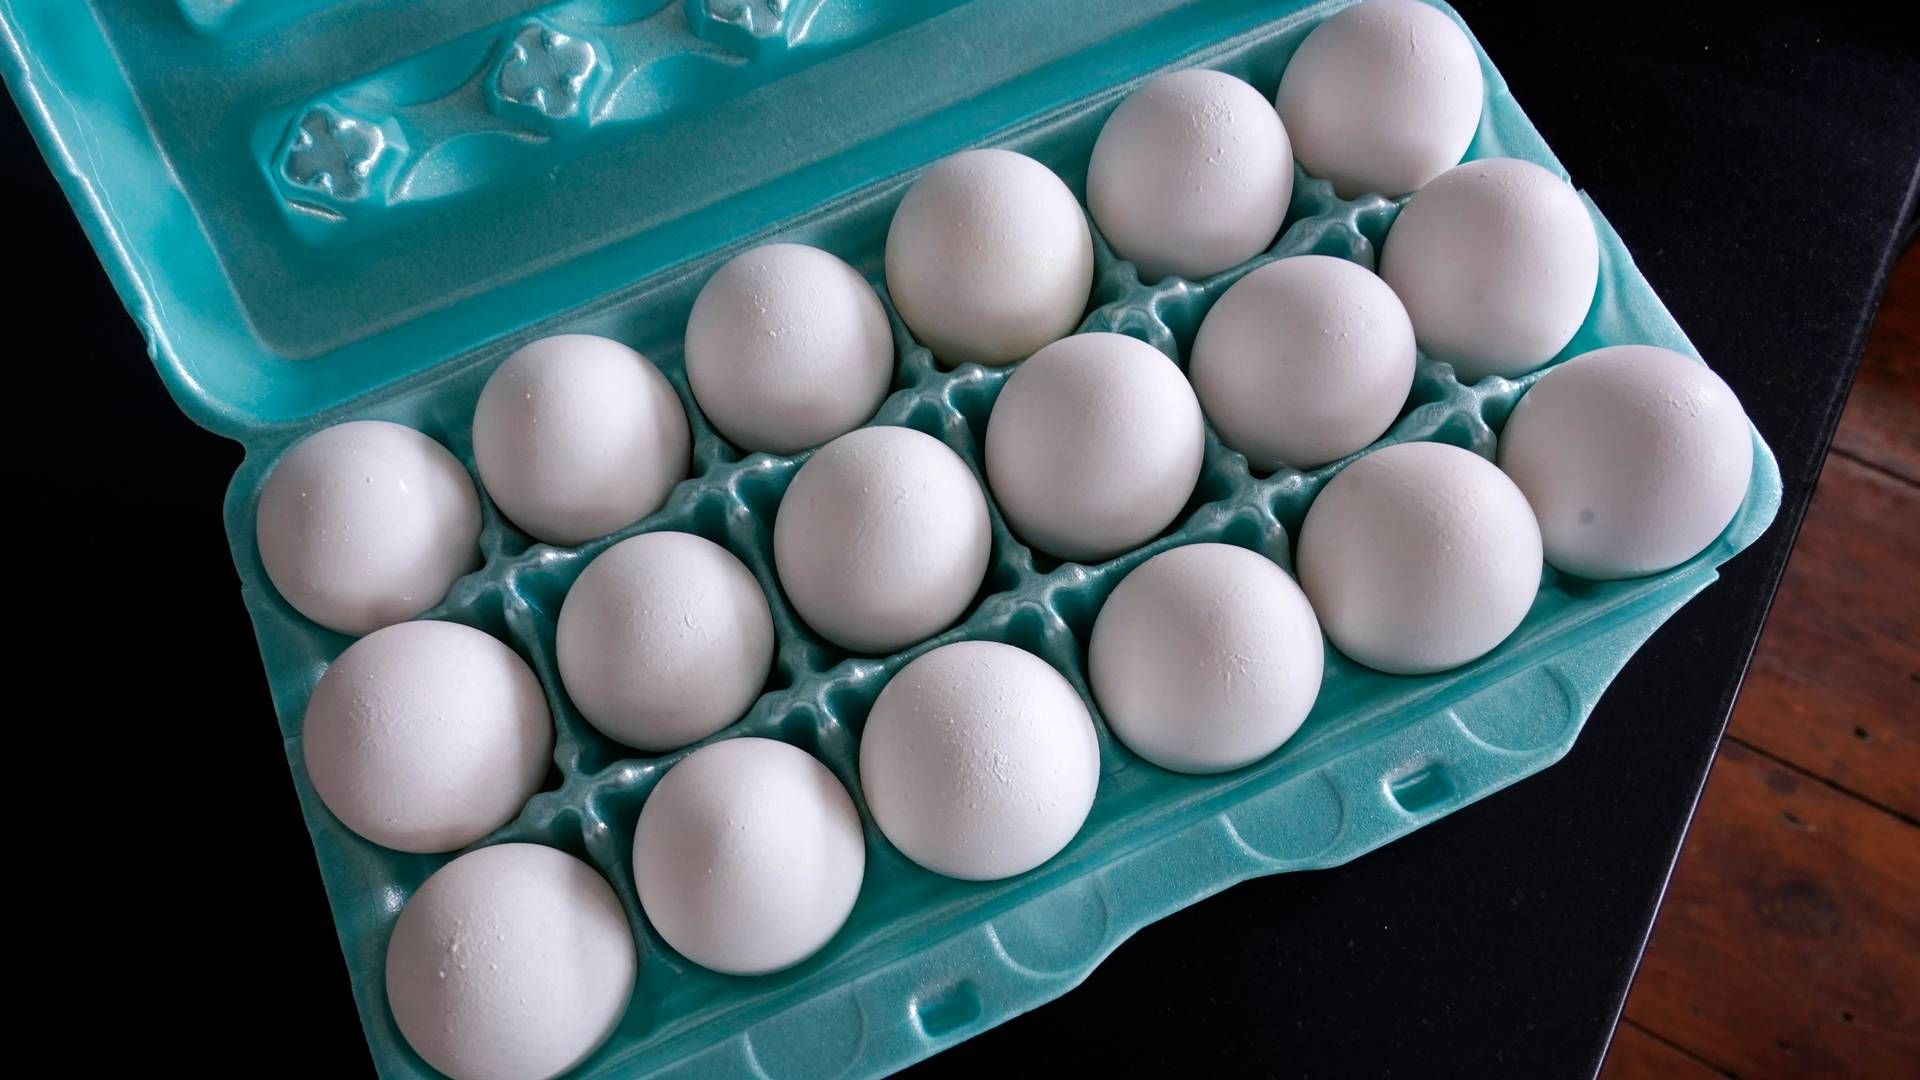 Det forventes fortsatt en mangel på egg i perioden mai til august, opplyser Landbruksdirektoratet. | Foto: AP Photo/Charles Krupa, File